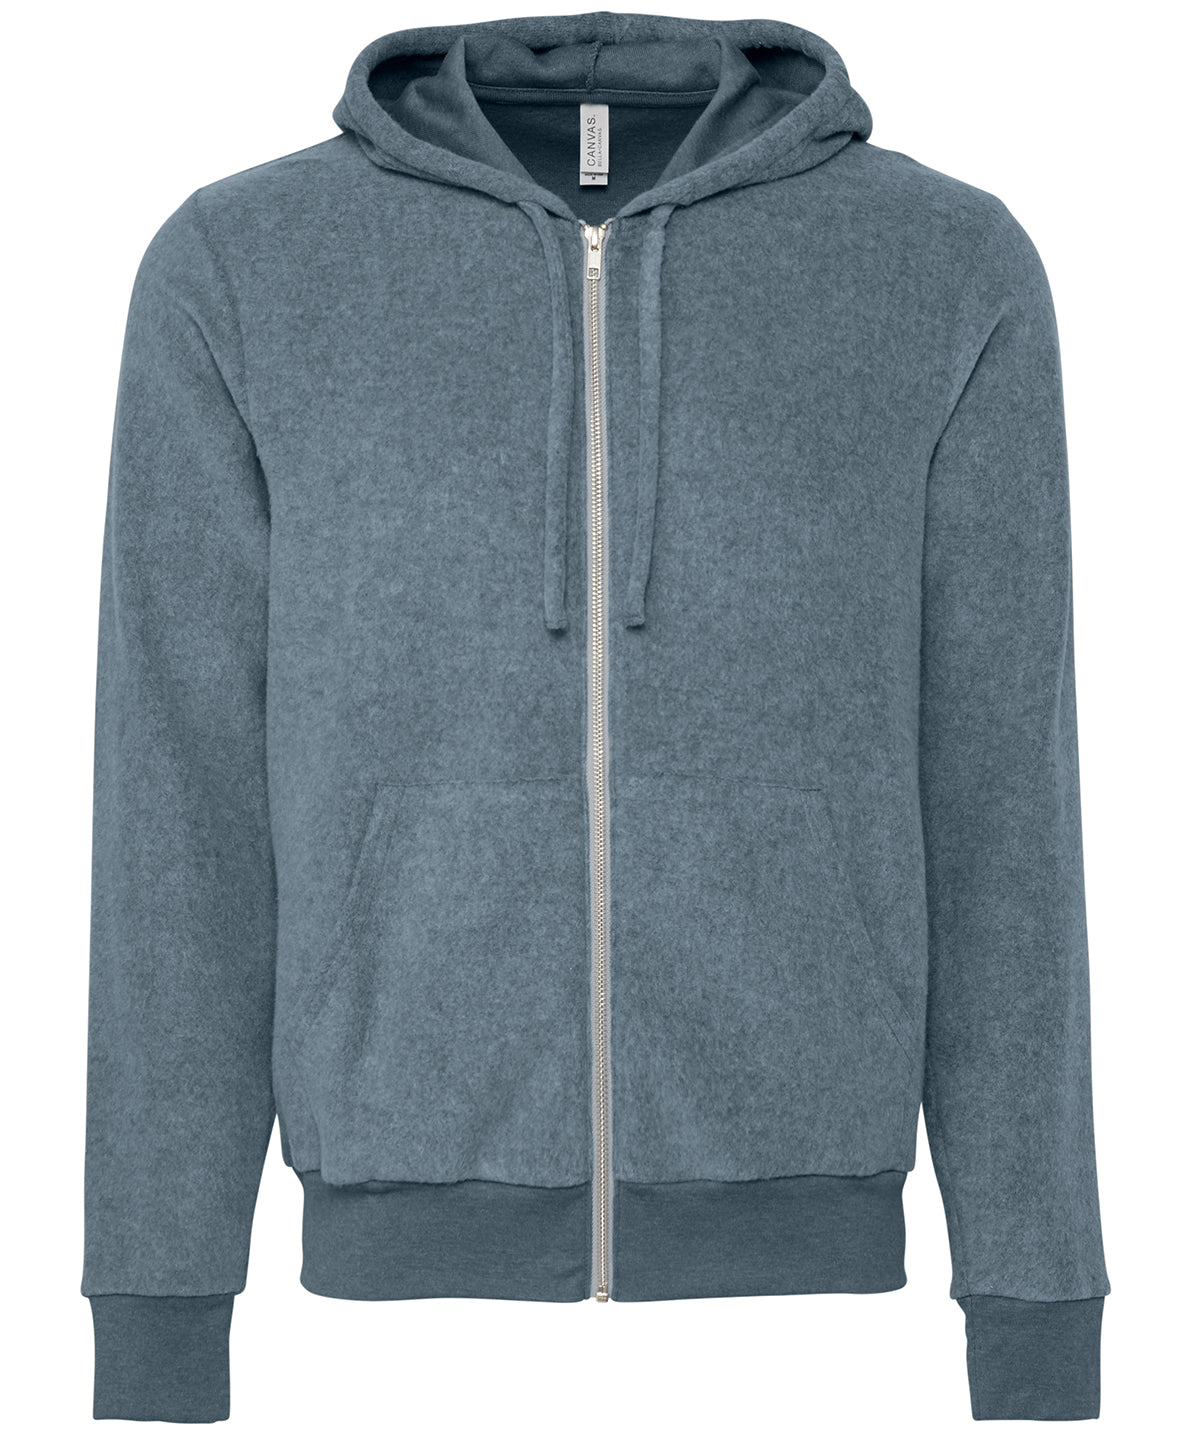 Personalised Hoodies - Heather Grey Bella Canvas Unisex sueded fleece full-zip hoodie